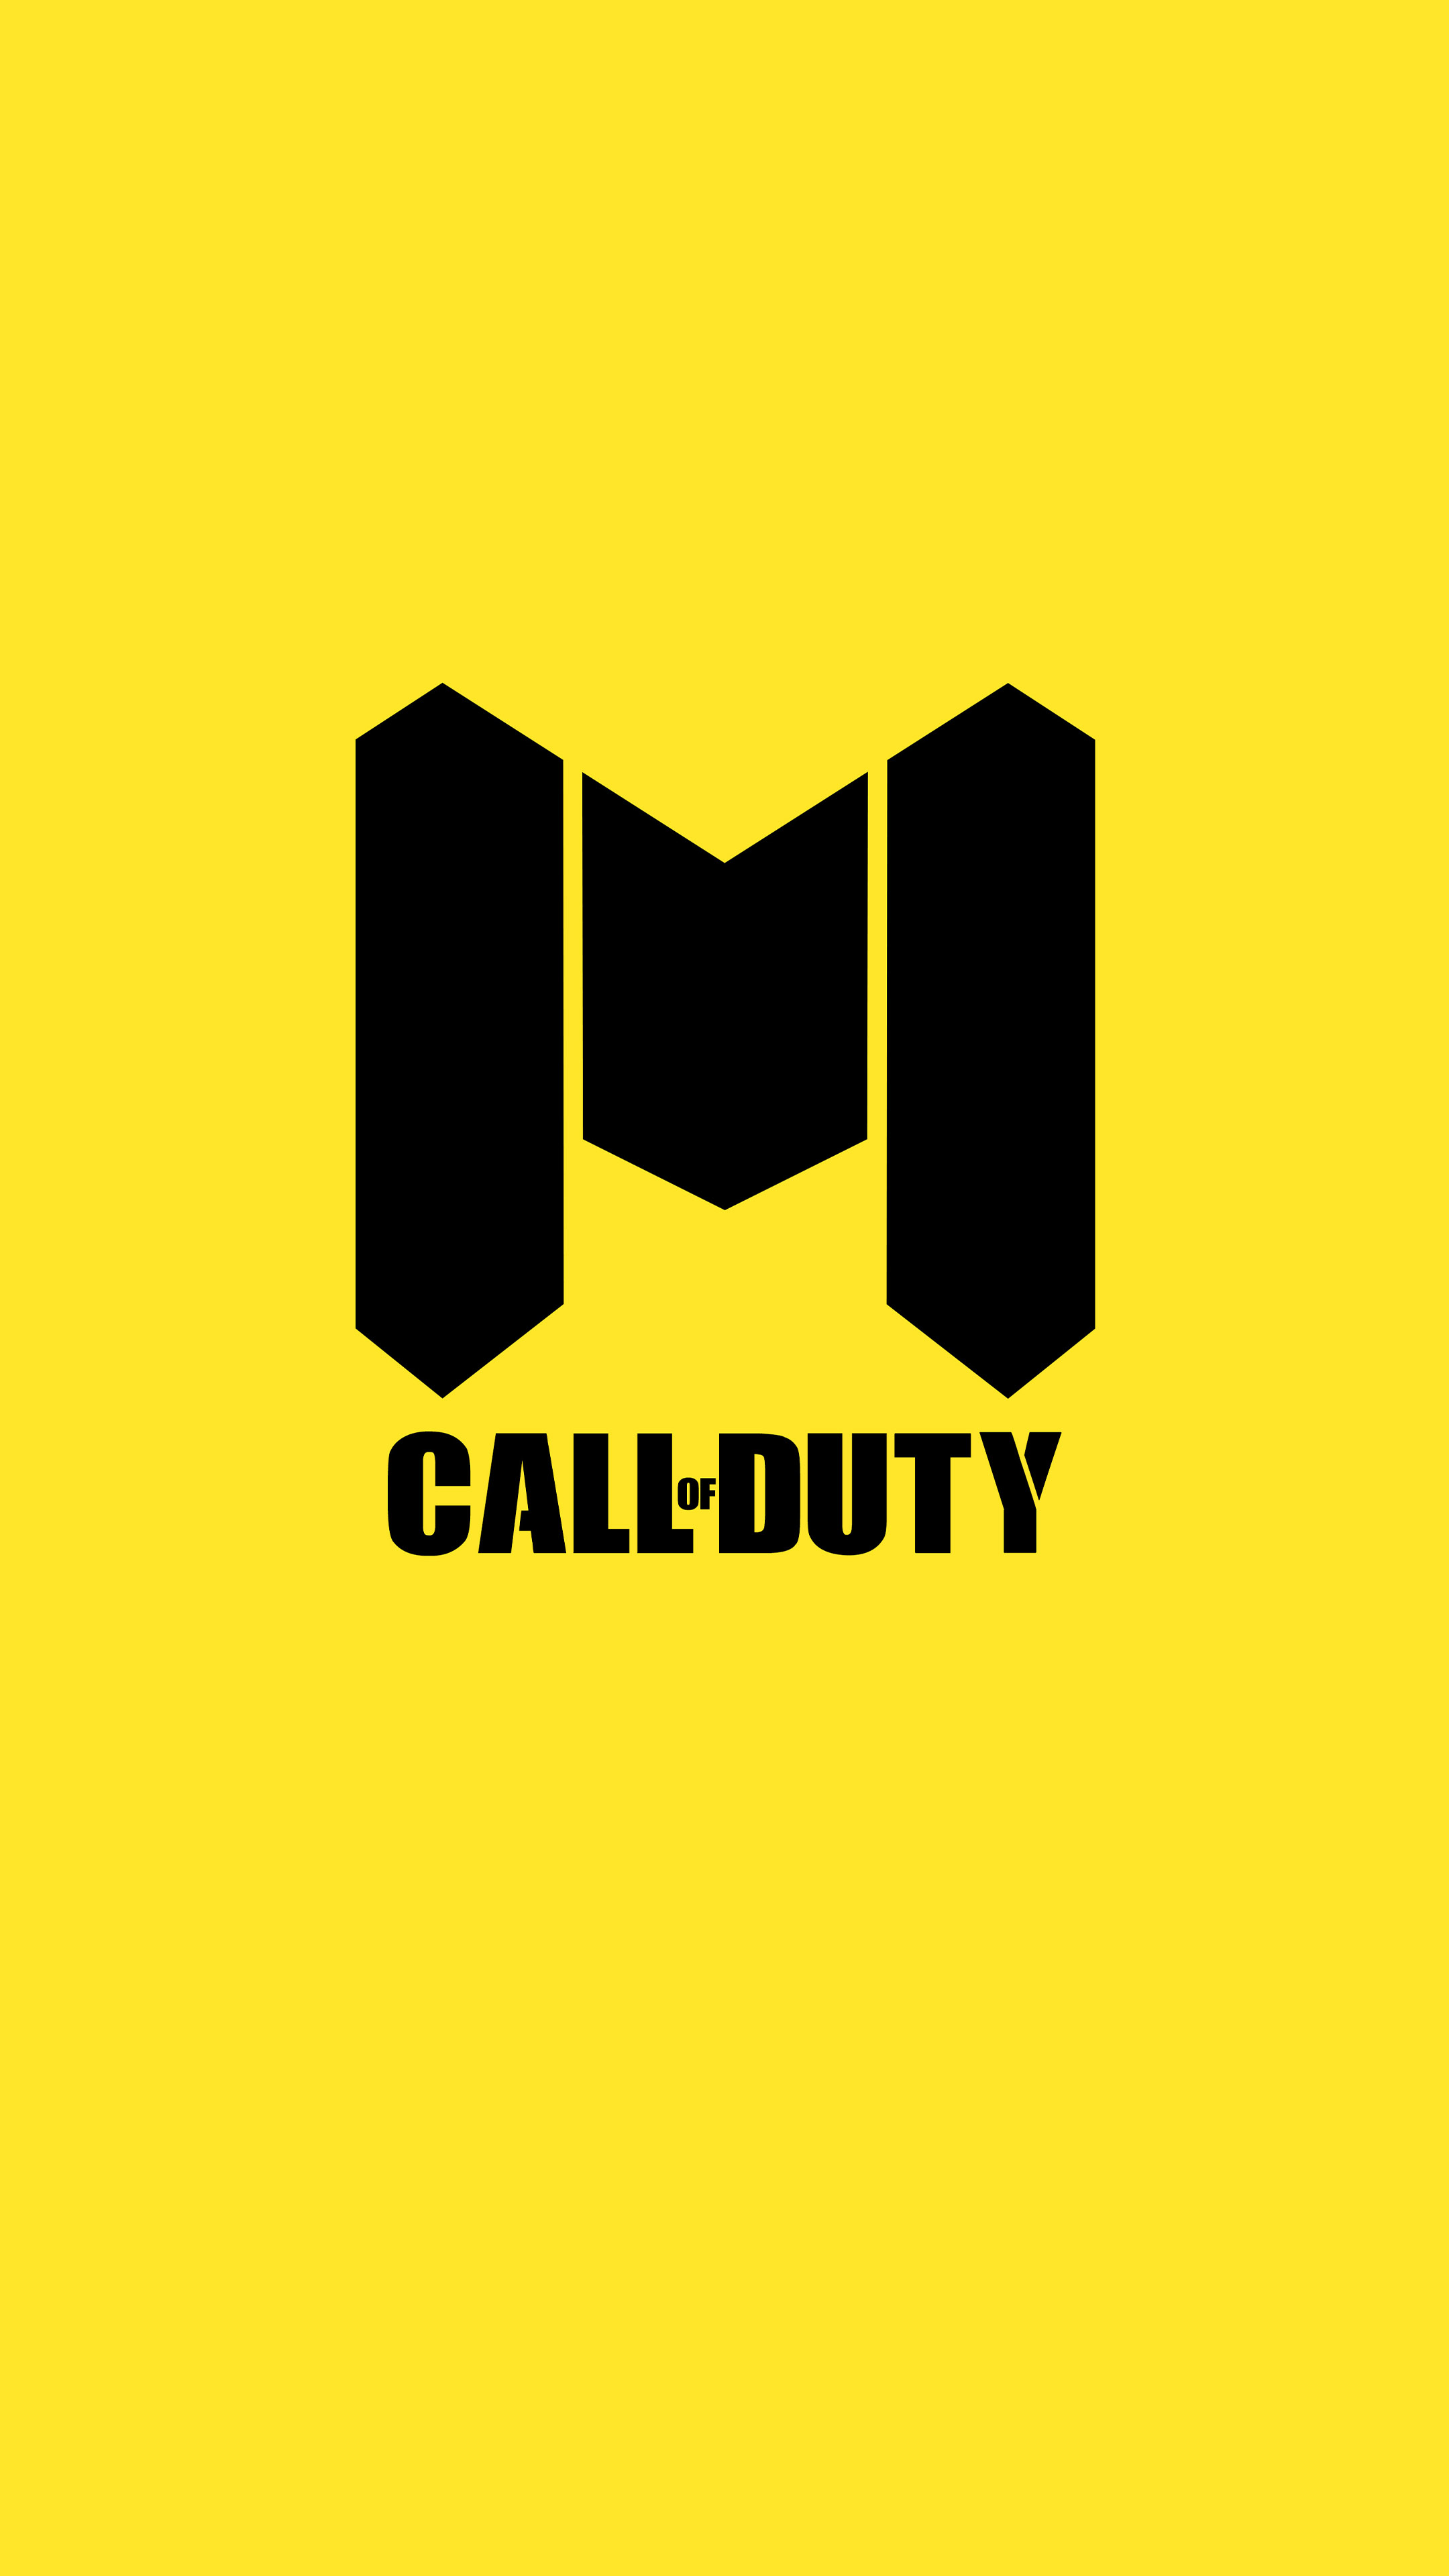 Logo trò chơi Call of Duty trên nền màu vàng sẽ khiến cho bạn muốn chơi ngay lập tức. Với độ phân giải Ultra HD 4K, bạn sẽ có cảm giác như đang trực tiếp tham gia vào trò chơi. Hãy để cho bản thân được hòa mình vào không gian trong trò chơi và thoả sức thể hiện kỹ năng bắn súng của mình nào!